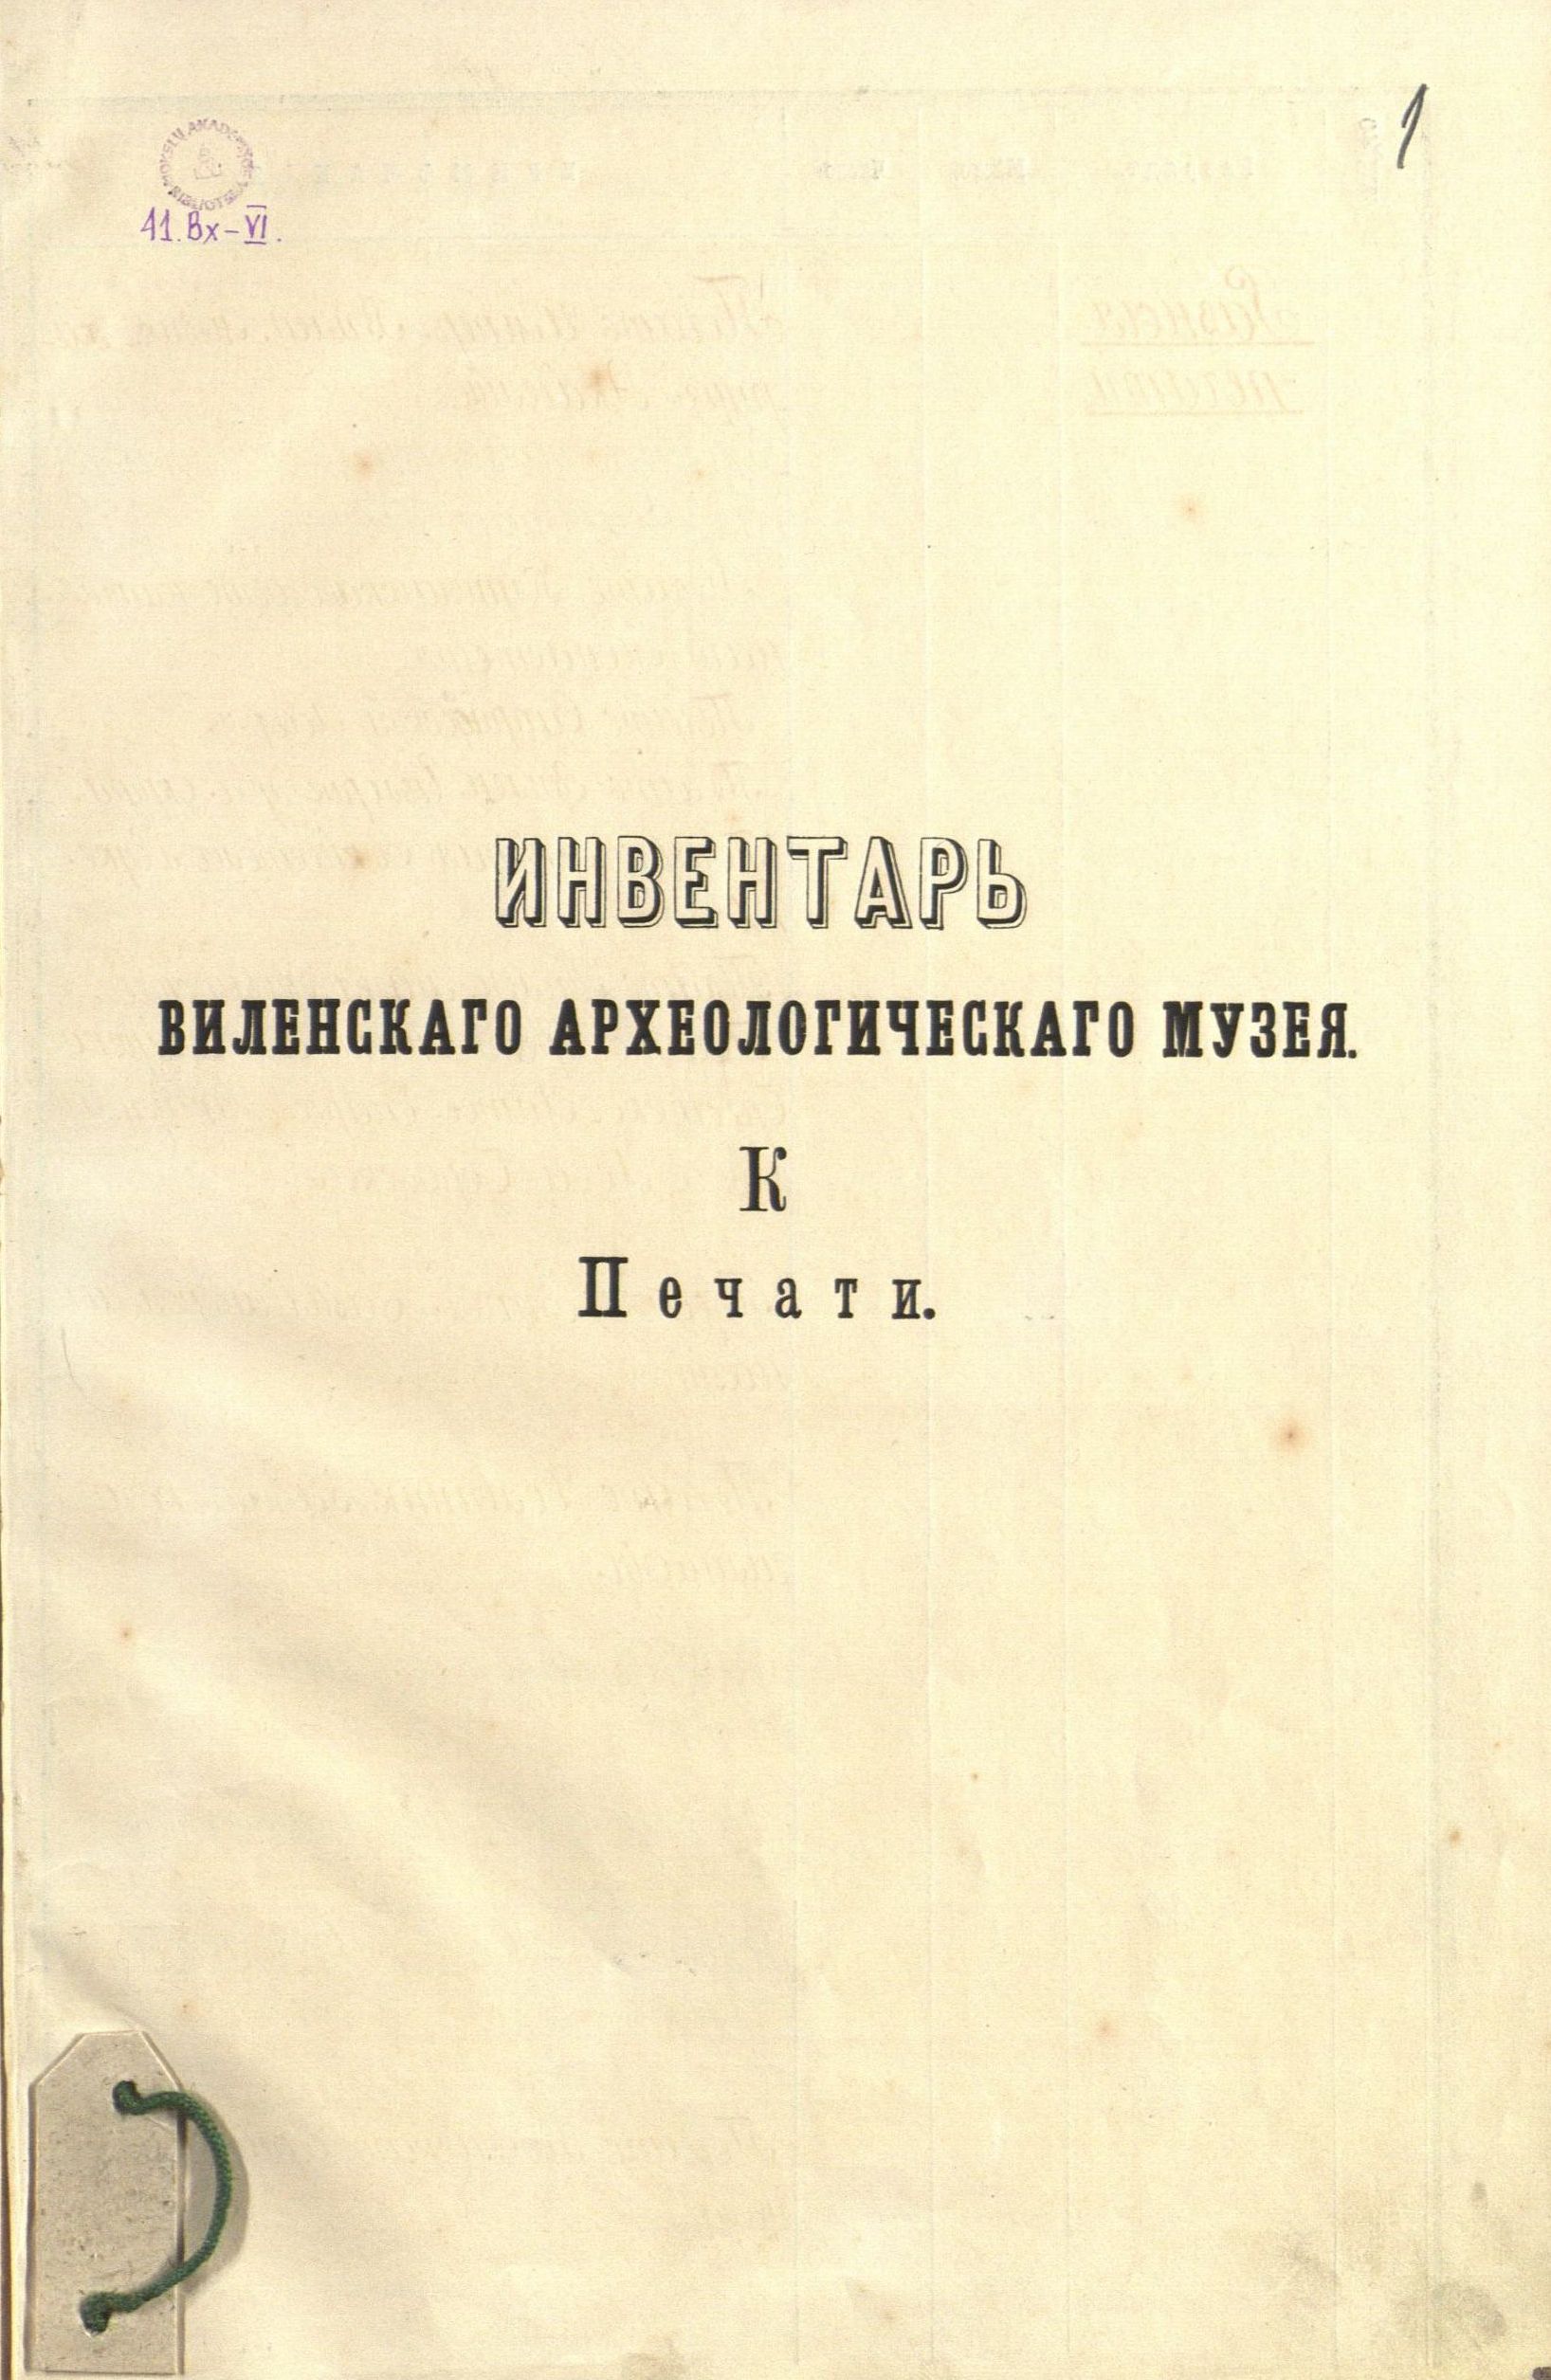 Senienų muziejaus prie Vilniaus viešosios bibliotekos eksponatų inventorinės knygos antraštinis lapas